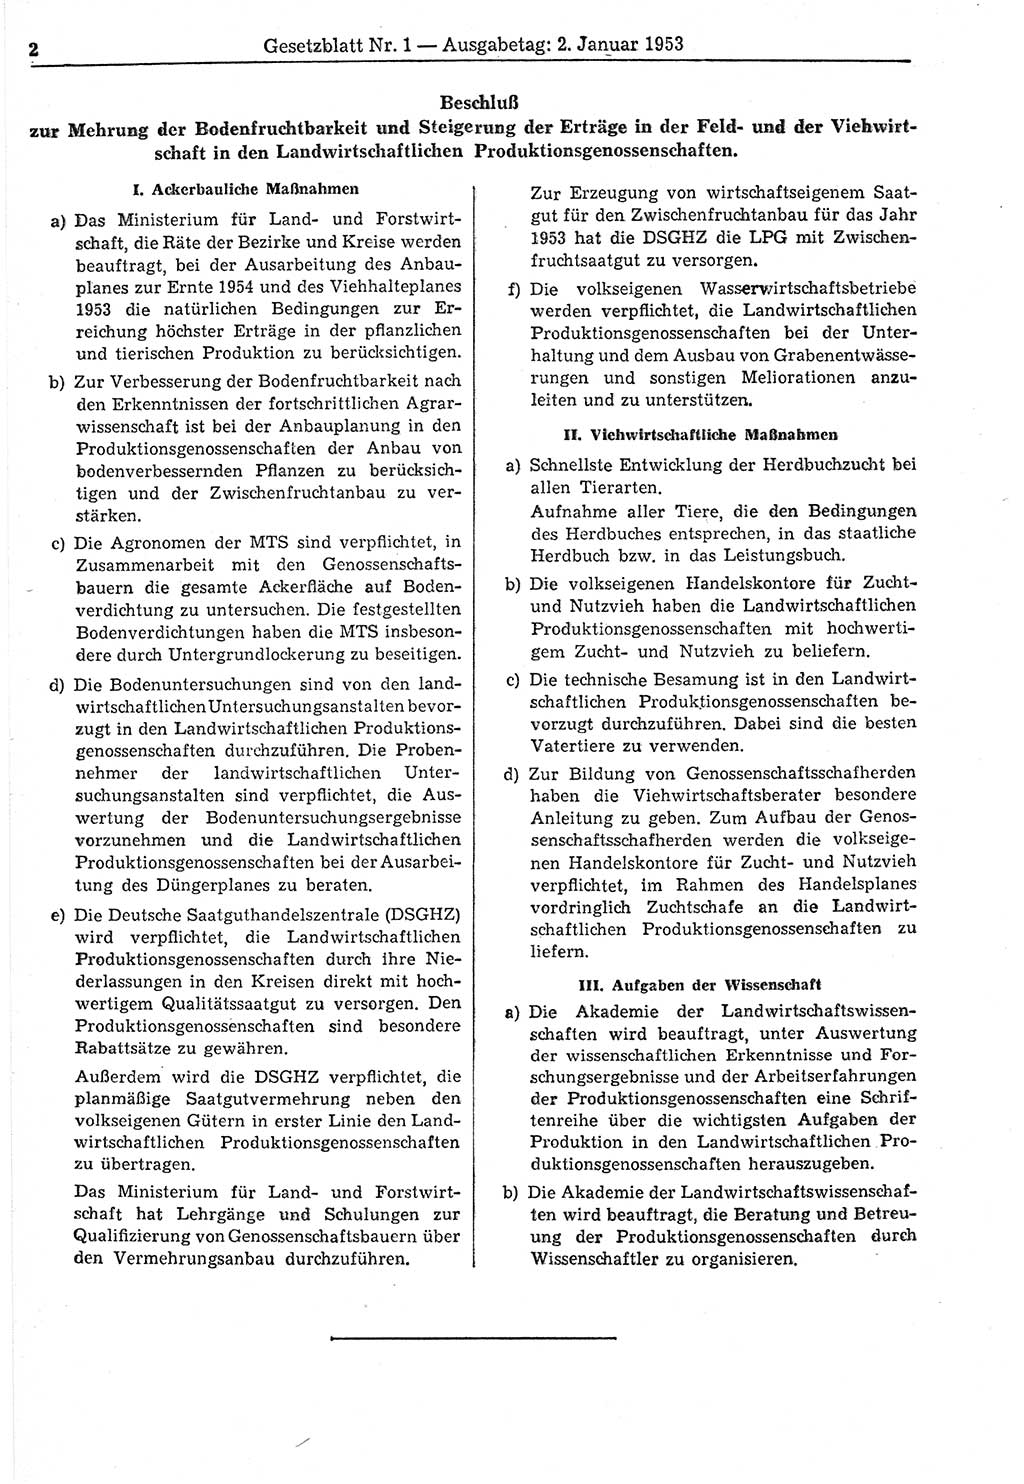 Gesetzblatt (GBl.) der Deutschen Demokratischen Republik (DDR) 1953, Seite 2 (GBl. DDR 1953, S. 2)